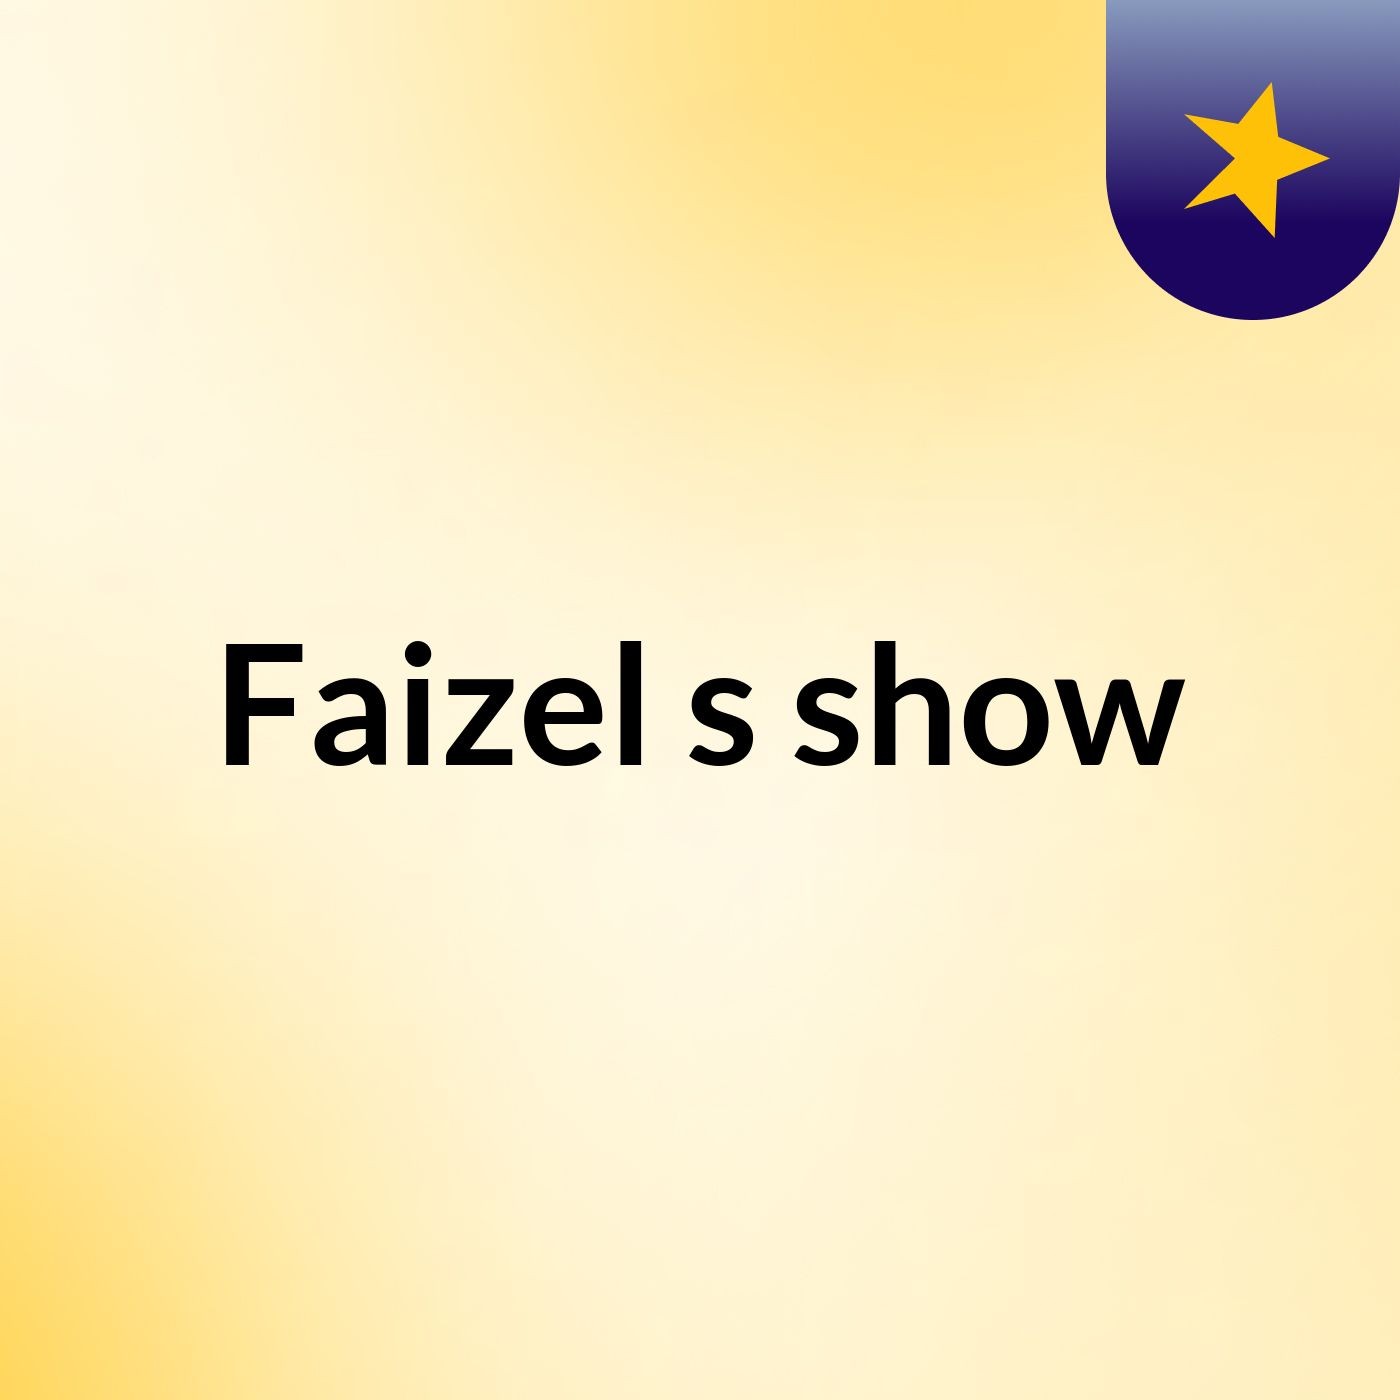 Faizel's show